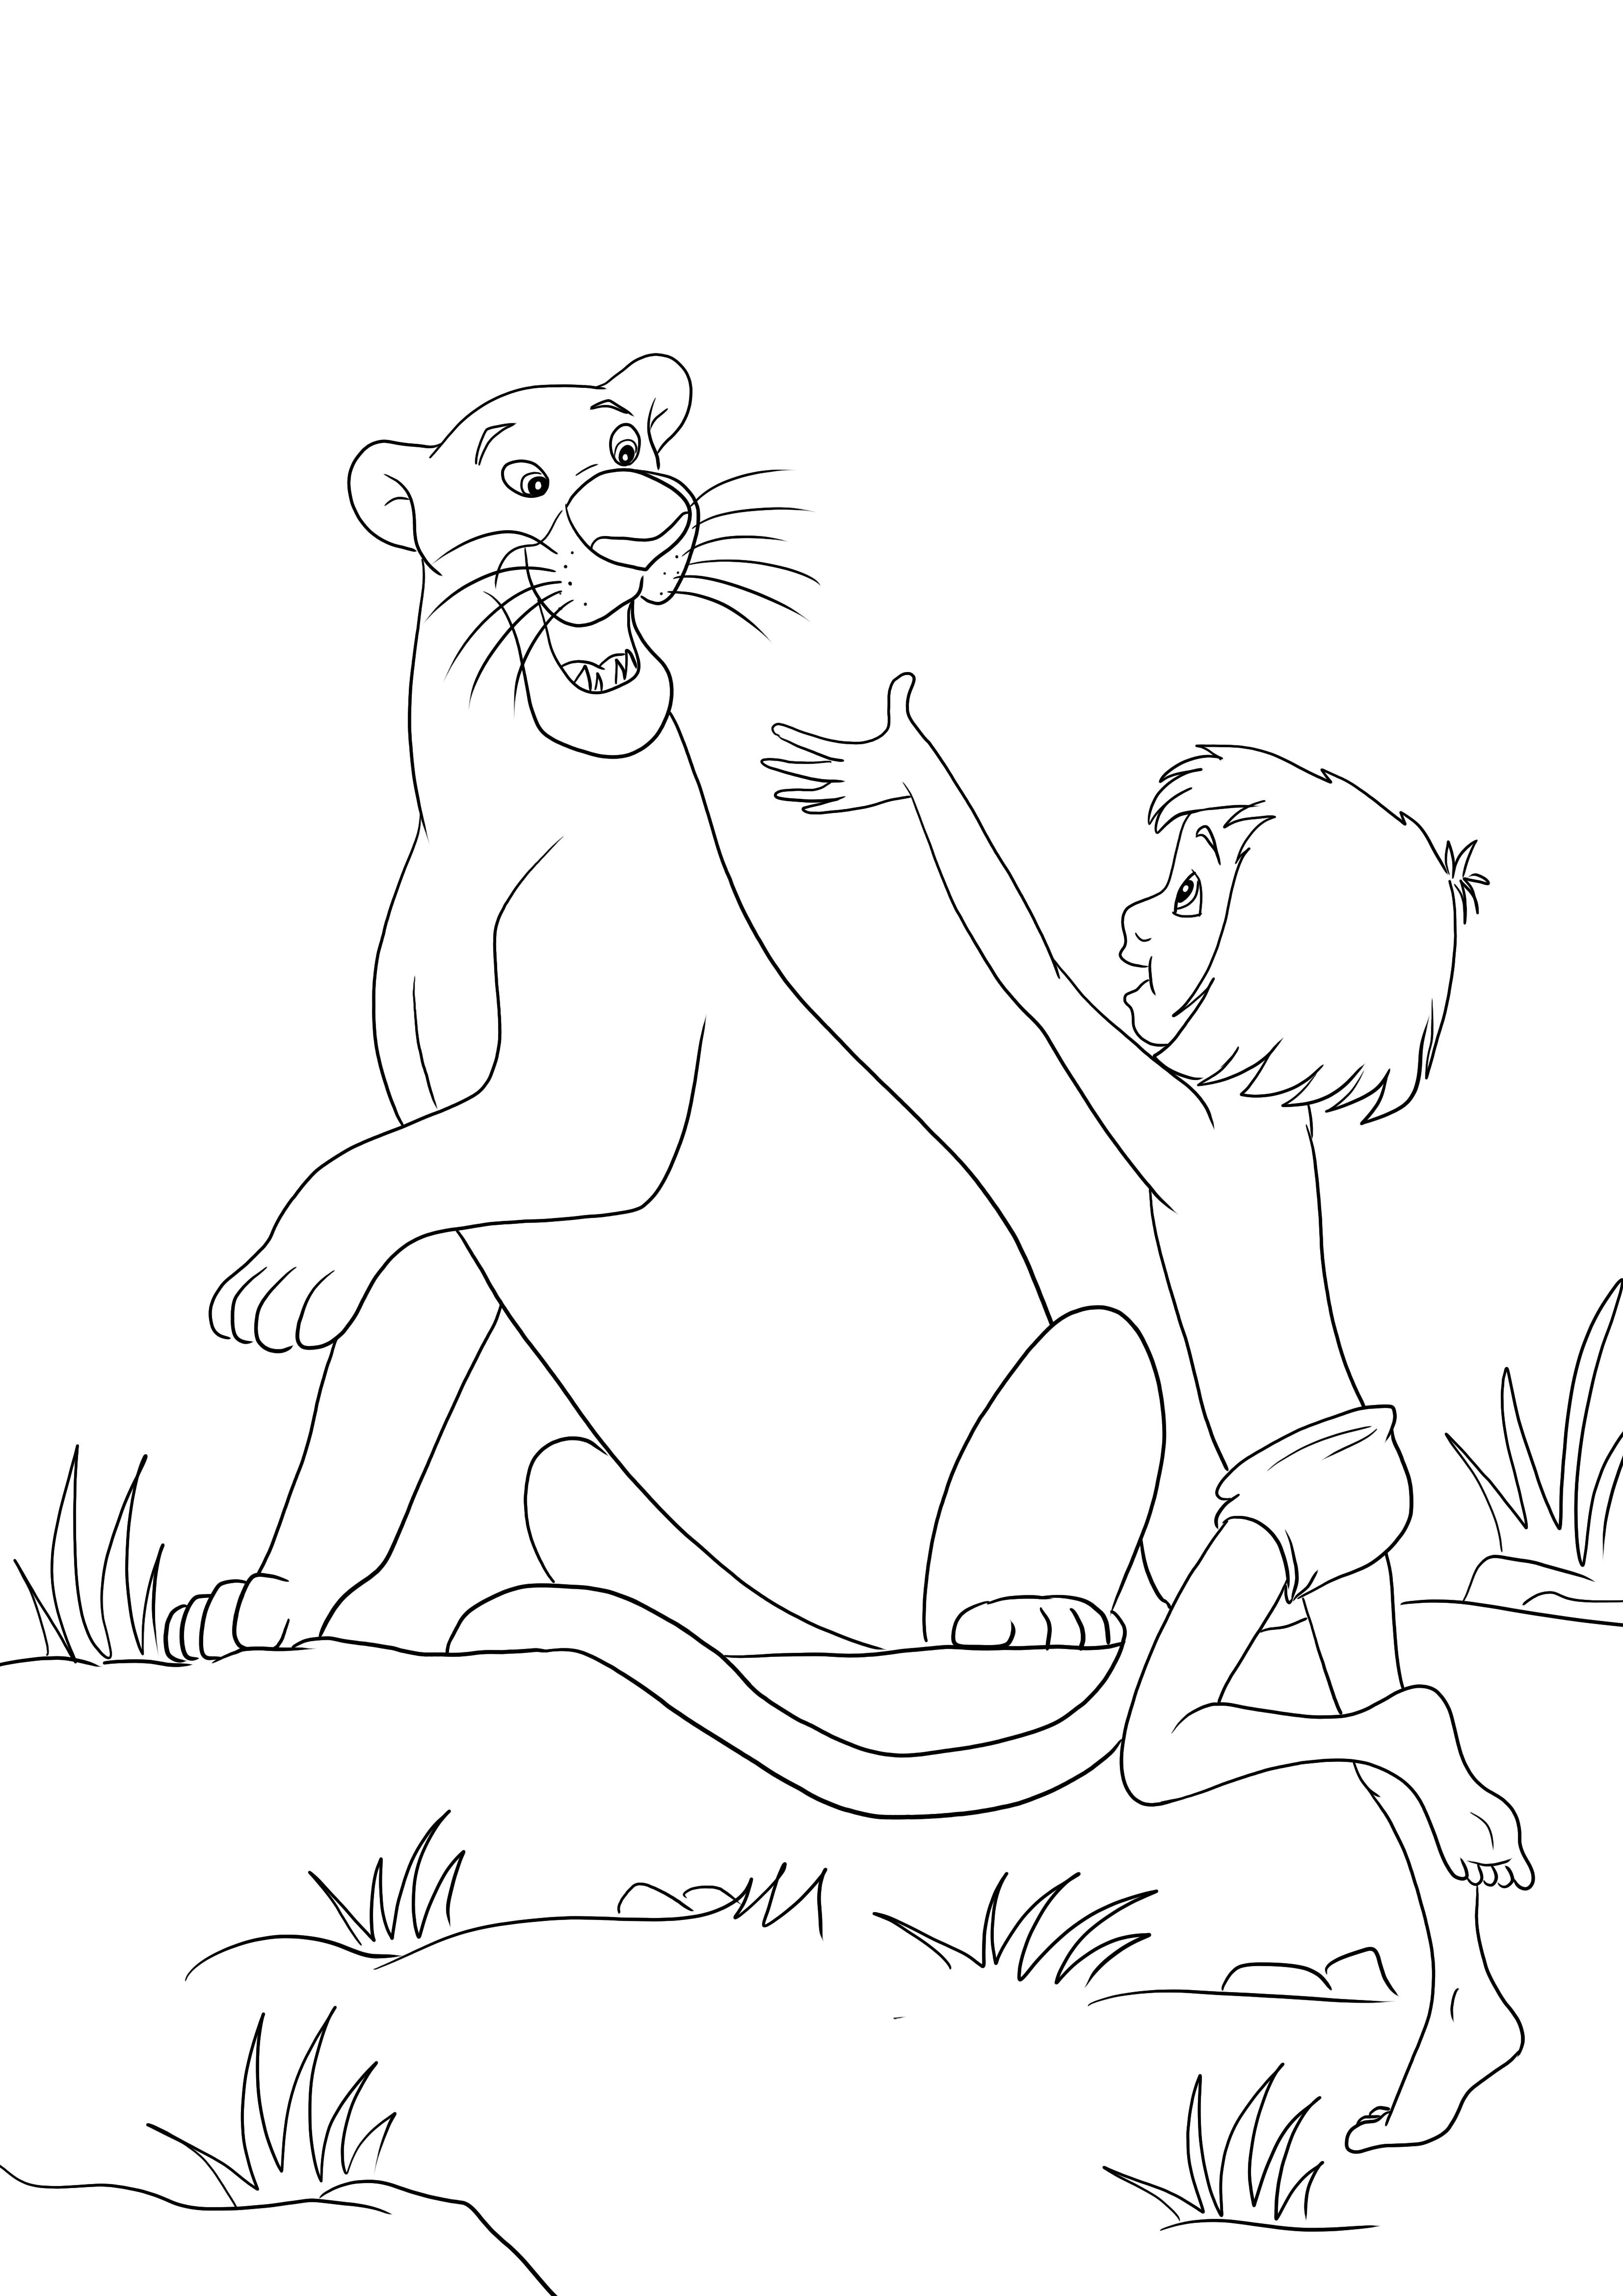 Mowgli și Bagheera sunt fericiți împreună, fără colorat și descărcare de imagini